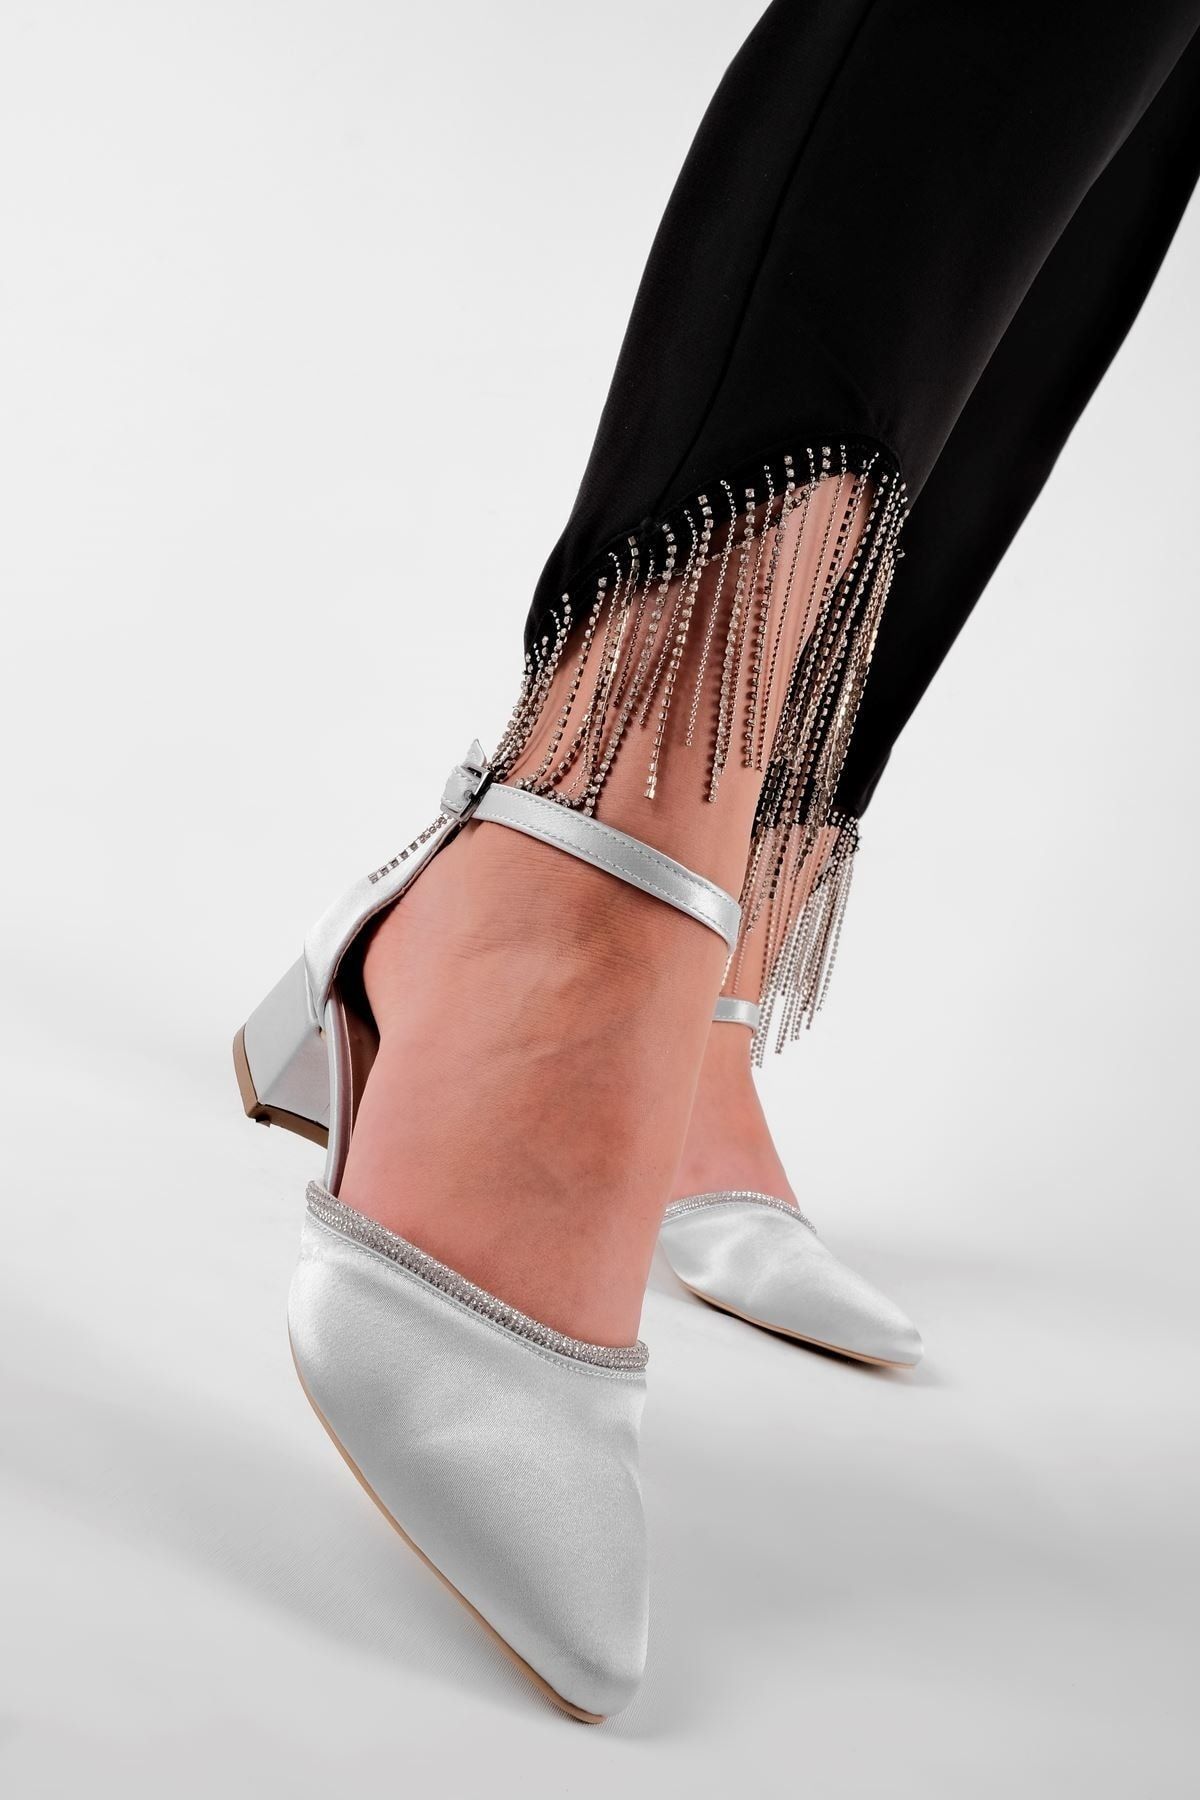 LAL SHOES & BAGS Casey Kadın Taş Detaylı Bilekten Bağlamalı Saten Topuklu Ayakkabı-Gri